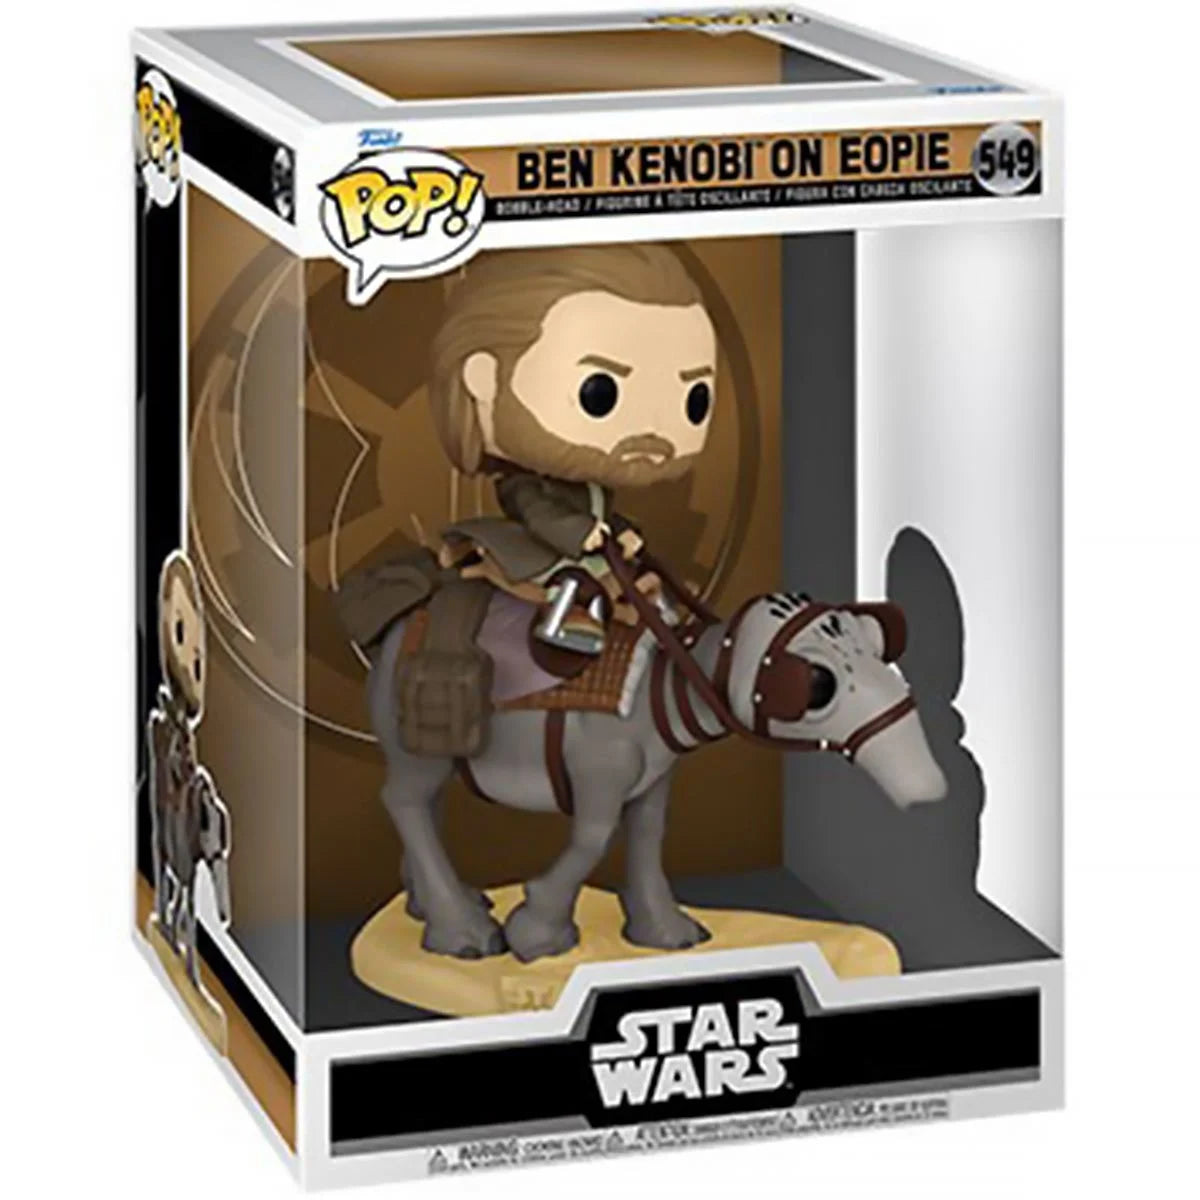 Star Wars: Obi-Wan Kenobi Ben Kenobi on Eopie Deluxe Pop! Hasbro